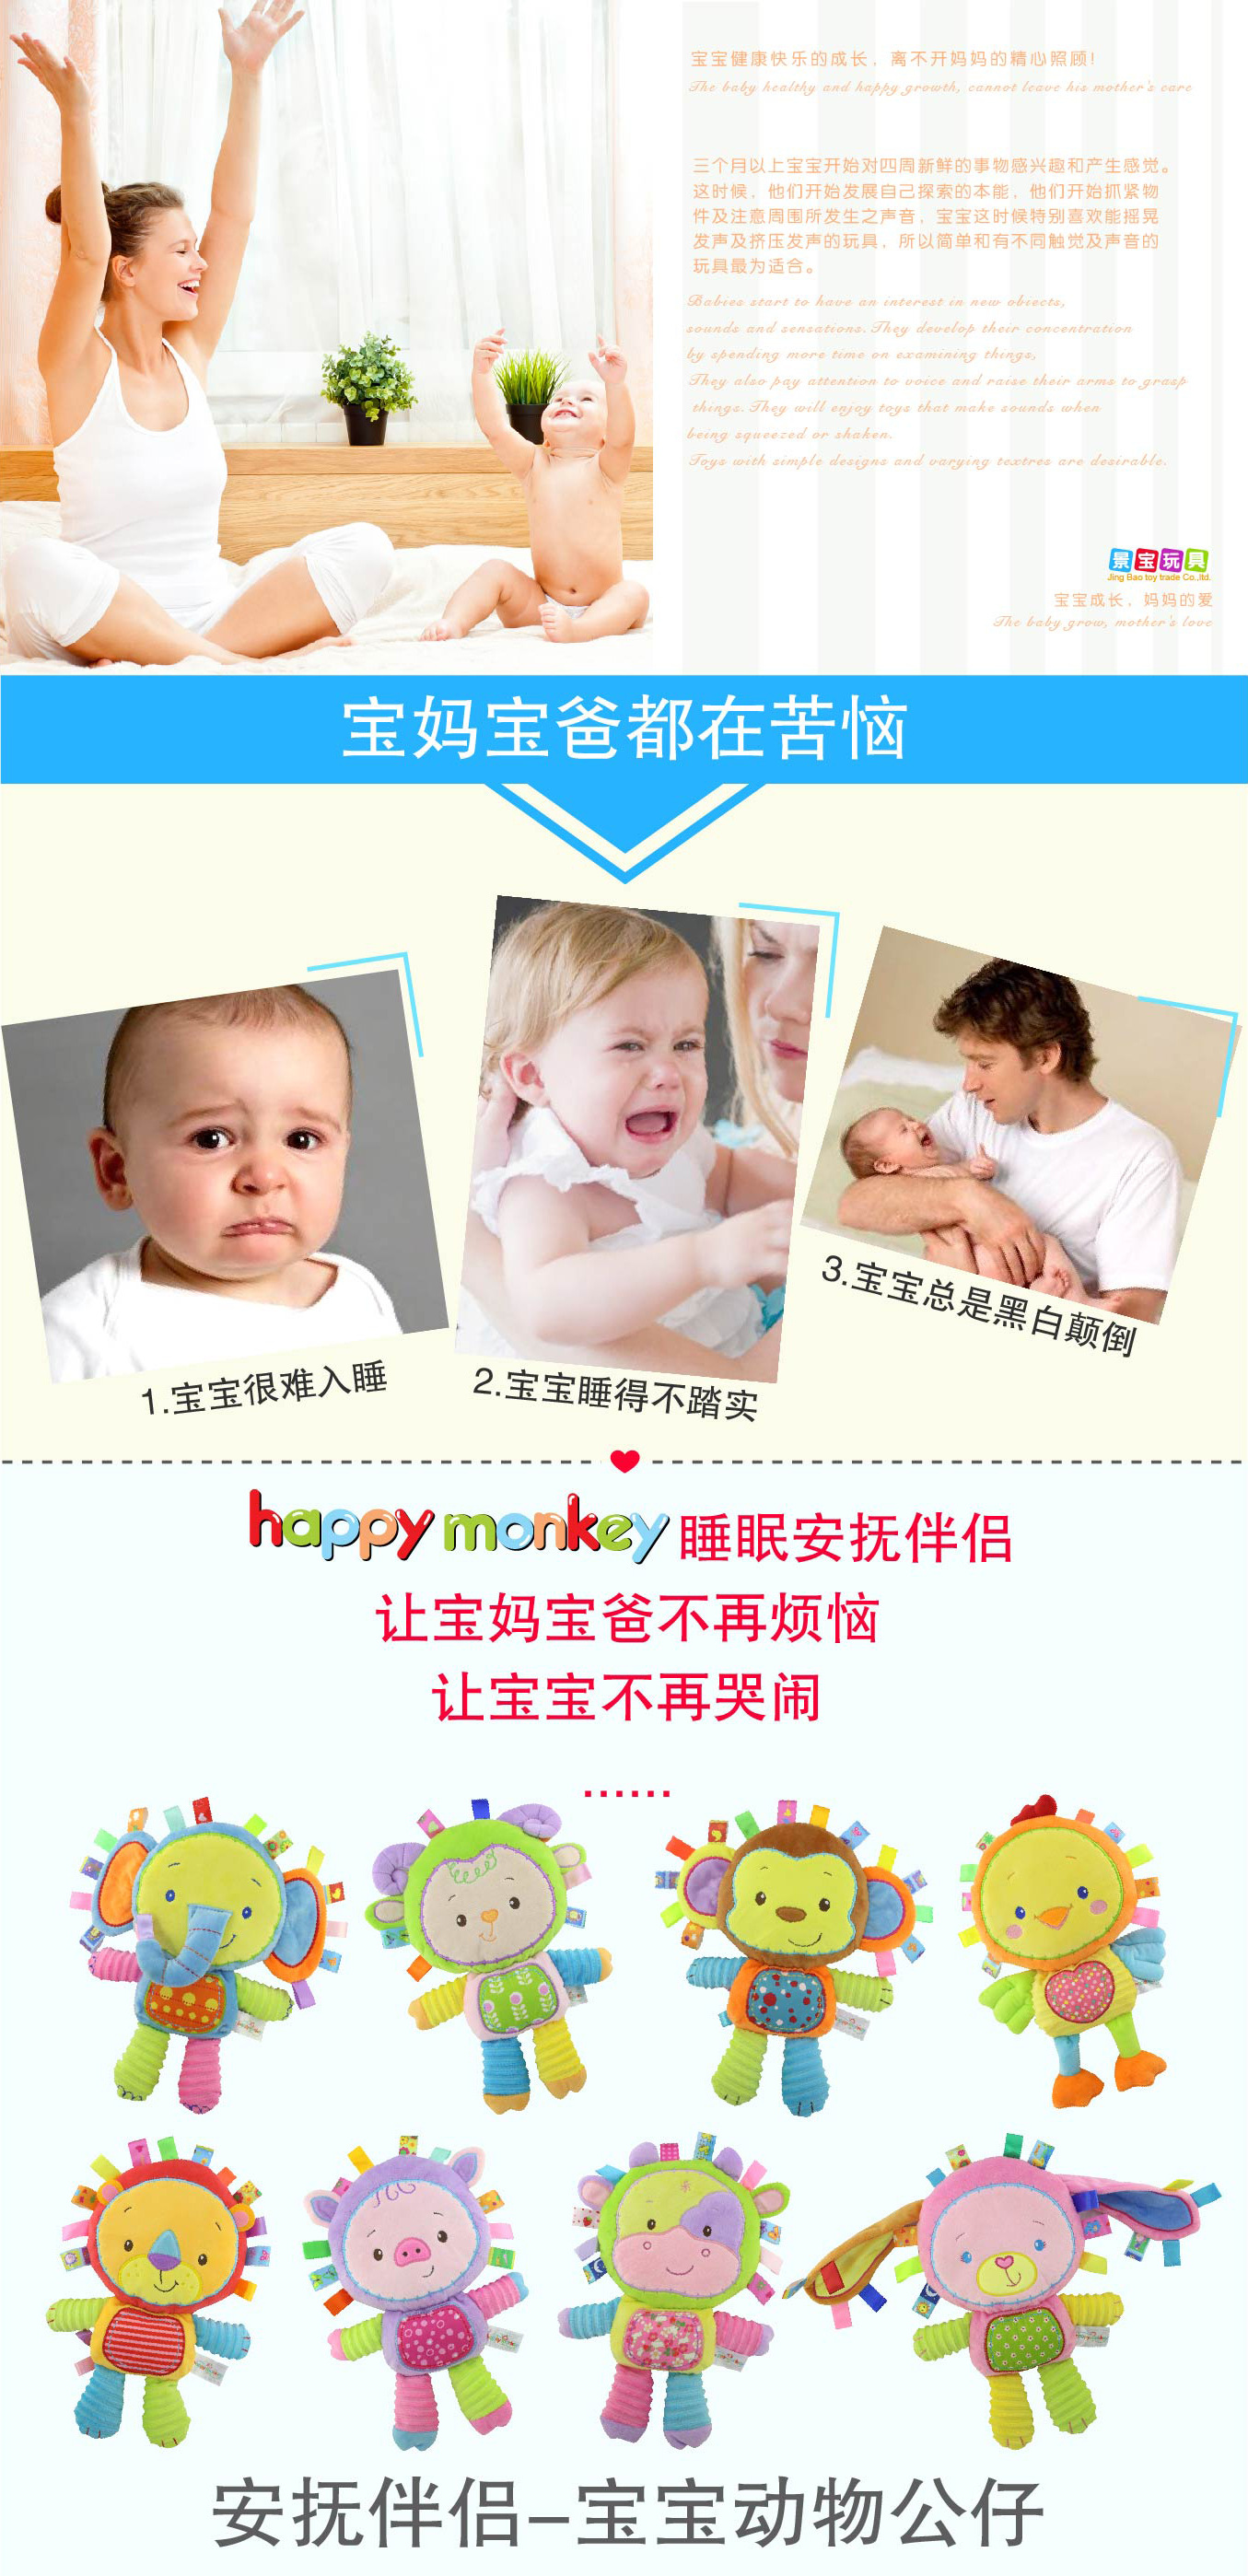 Happy Monkey婴儿毛绒公仔 婴幼儿安抚玩偶0-1-3岁新生儿玩具定制示例图1